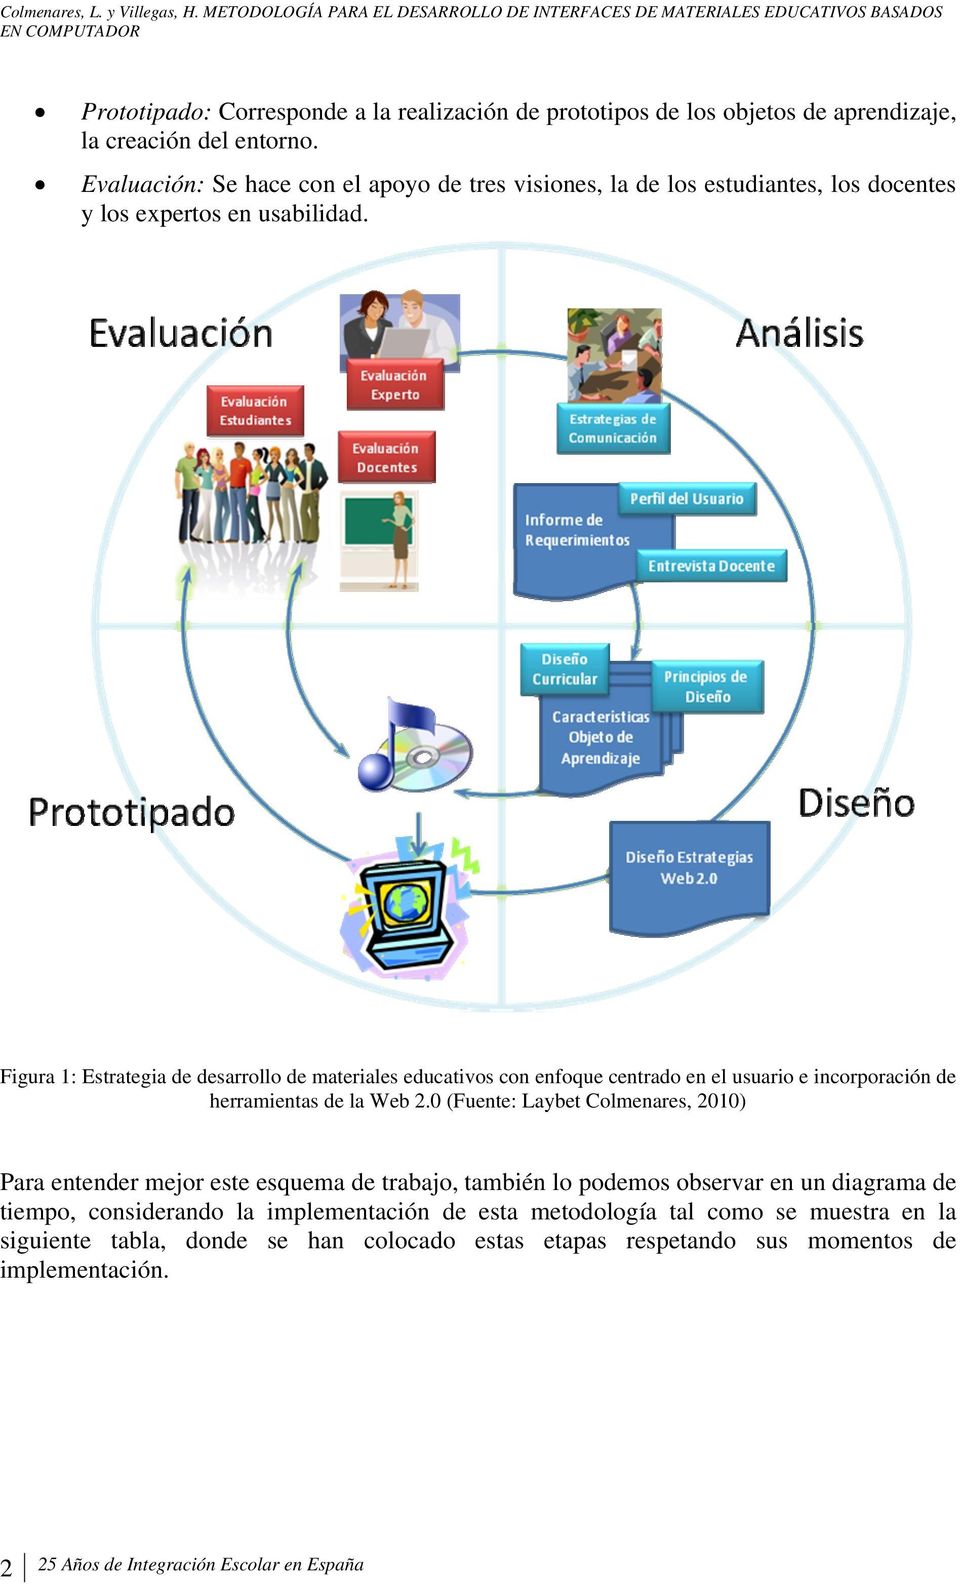 Figura 1: Estrategia de desarrollo de materiales educativos con enfoque centrado en el usuario e incorporación de herramientas de la Web 2.